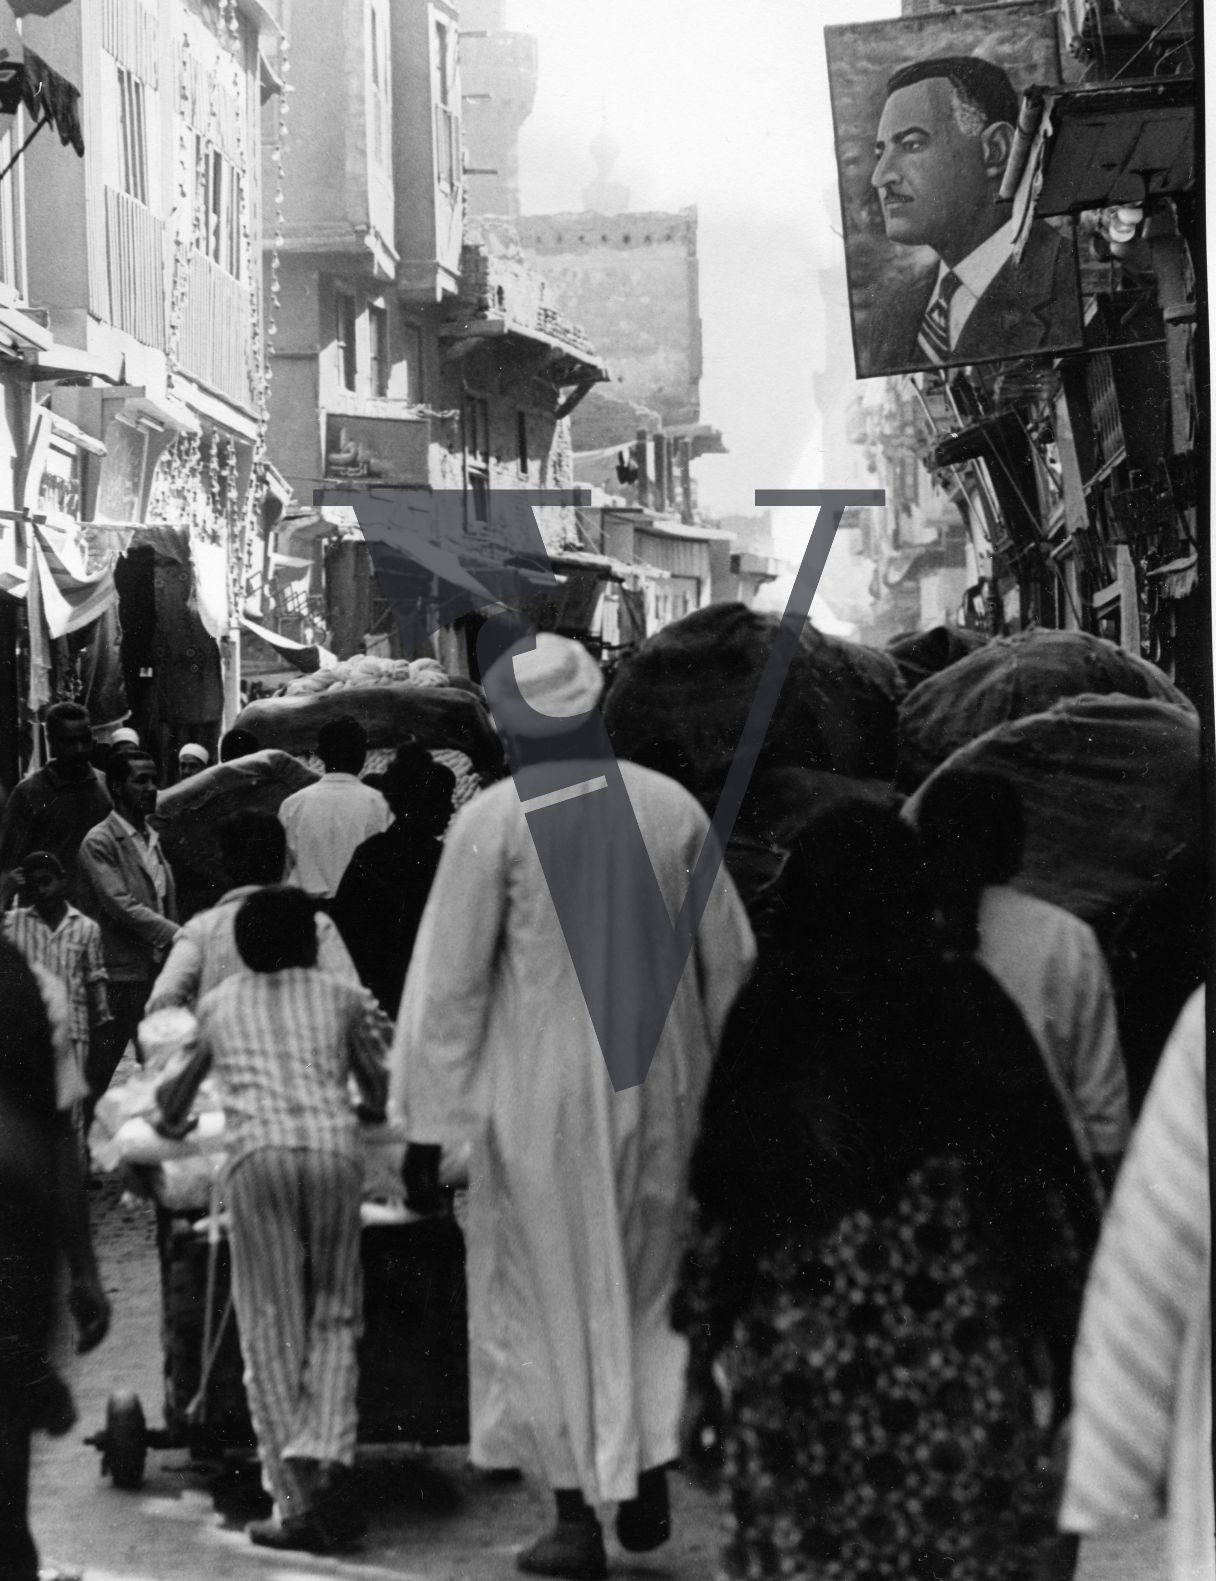 Egypt, street scene, bustling, Nasser poster.